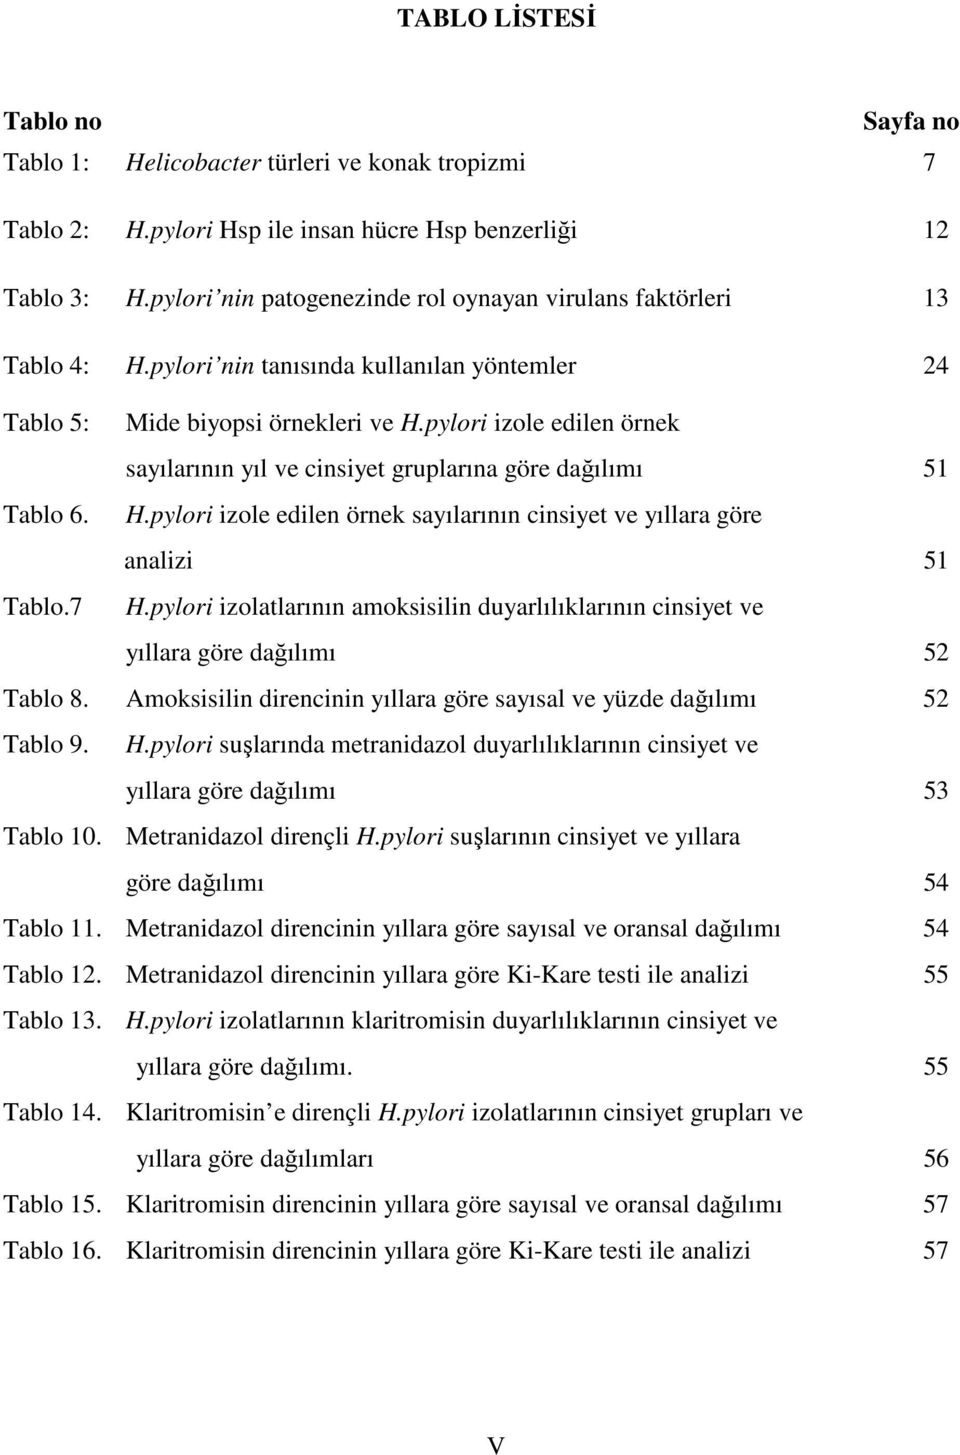 pylori izole edilen örnek sayılarının yıl ve cinsiyet gruplarına göre dağılımı 51 Tablo 6. H.pylori izole edilen örnek sayılarının cinsiyet ve yıllara göre analizi 51 Tablo.7 H.